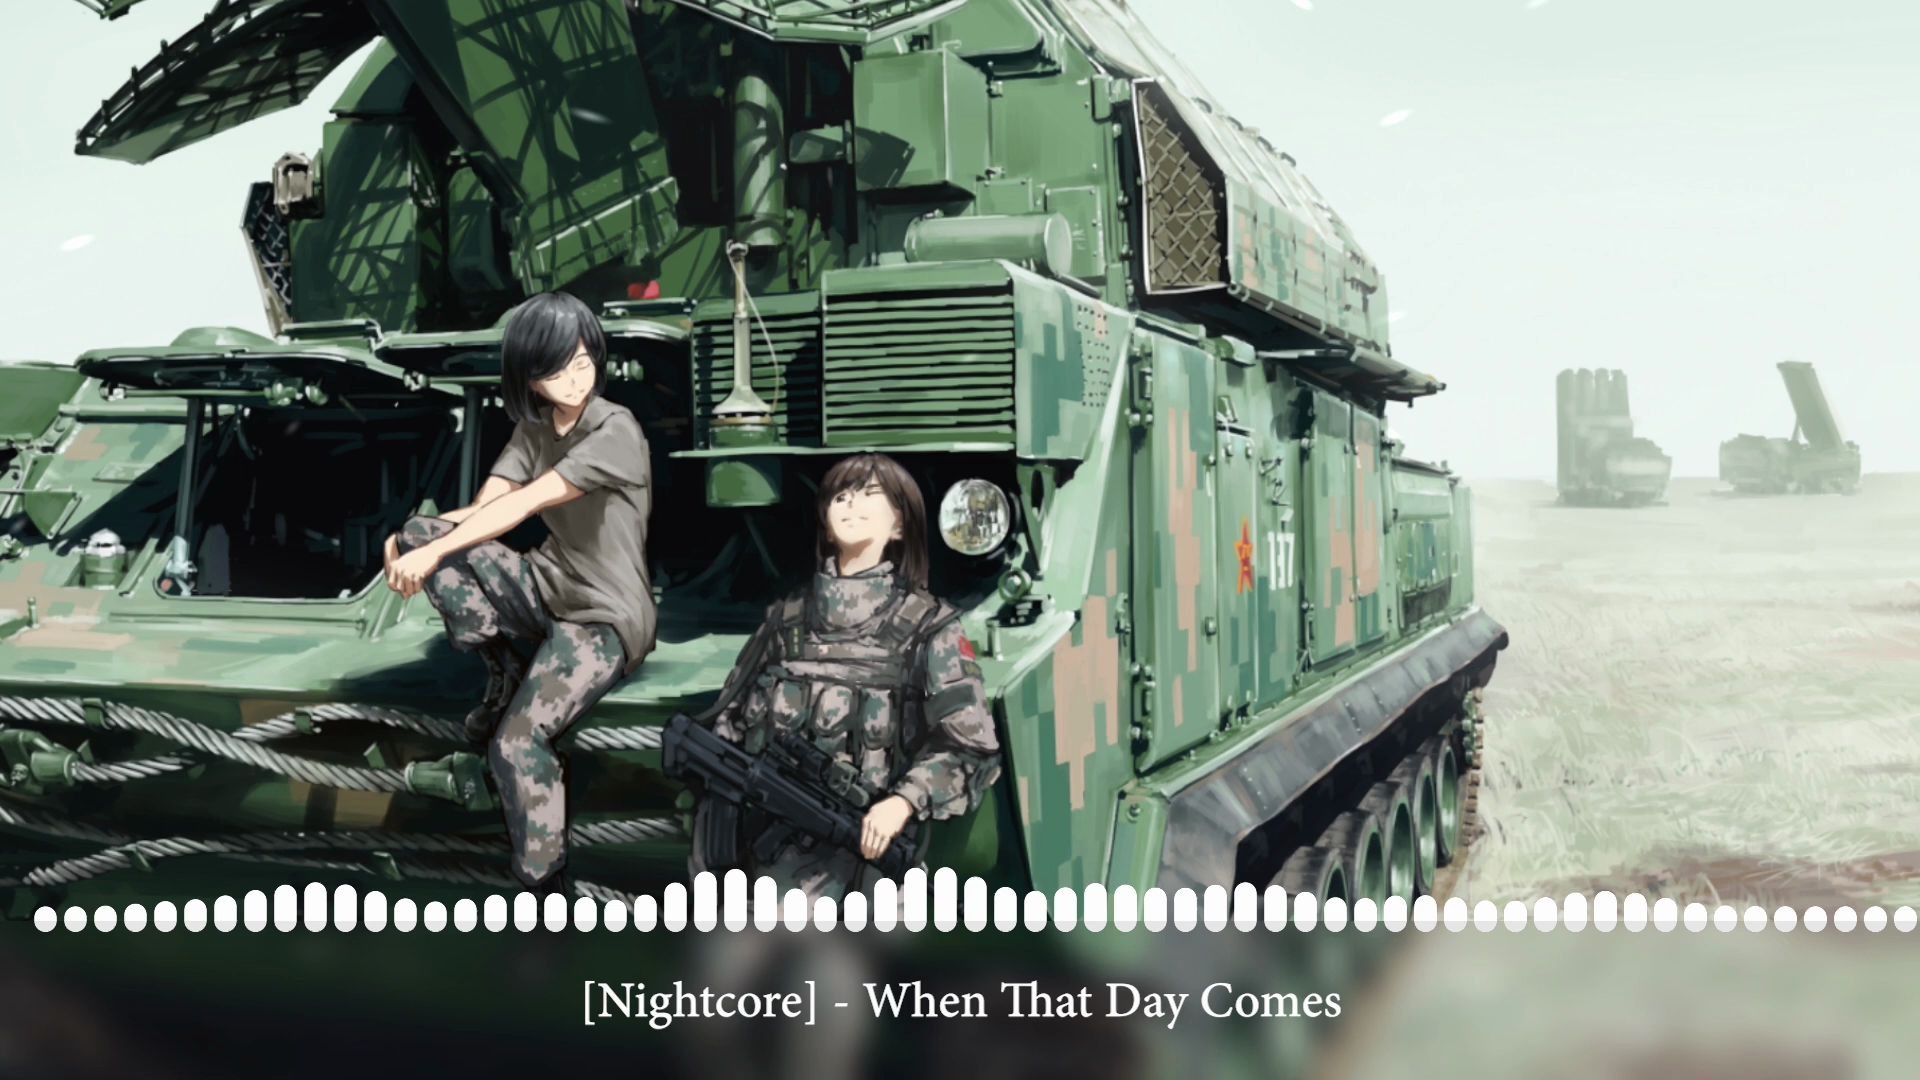 【搬运】Nightcore: 当那一天来临 | 中国人民解放军乐曲 | Nightcore by Samuel Farina